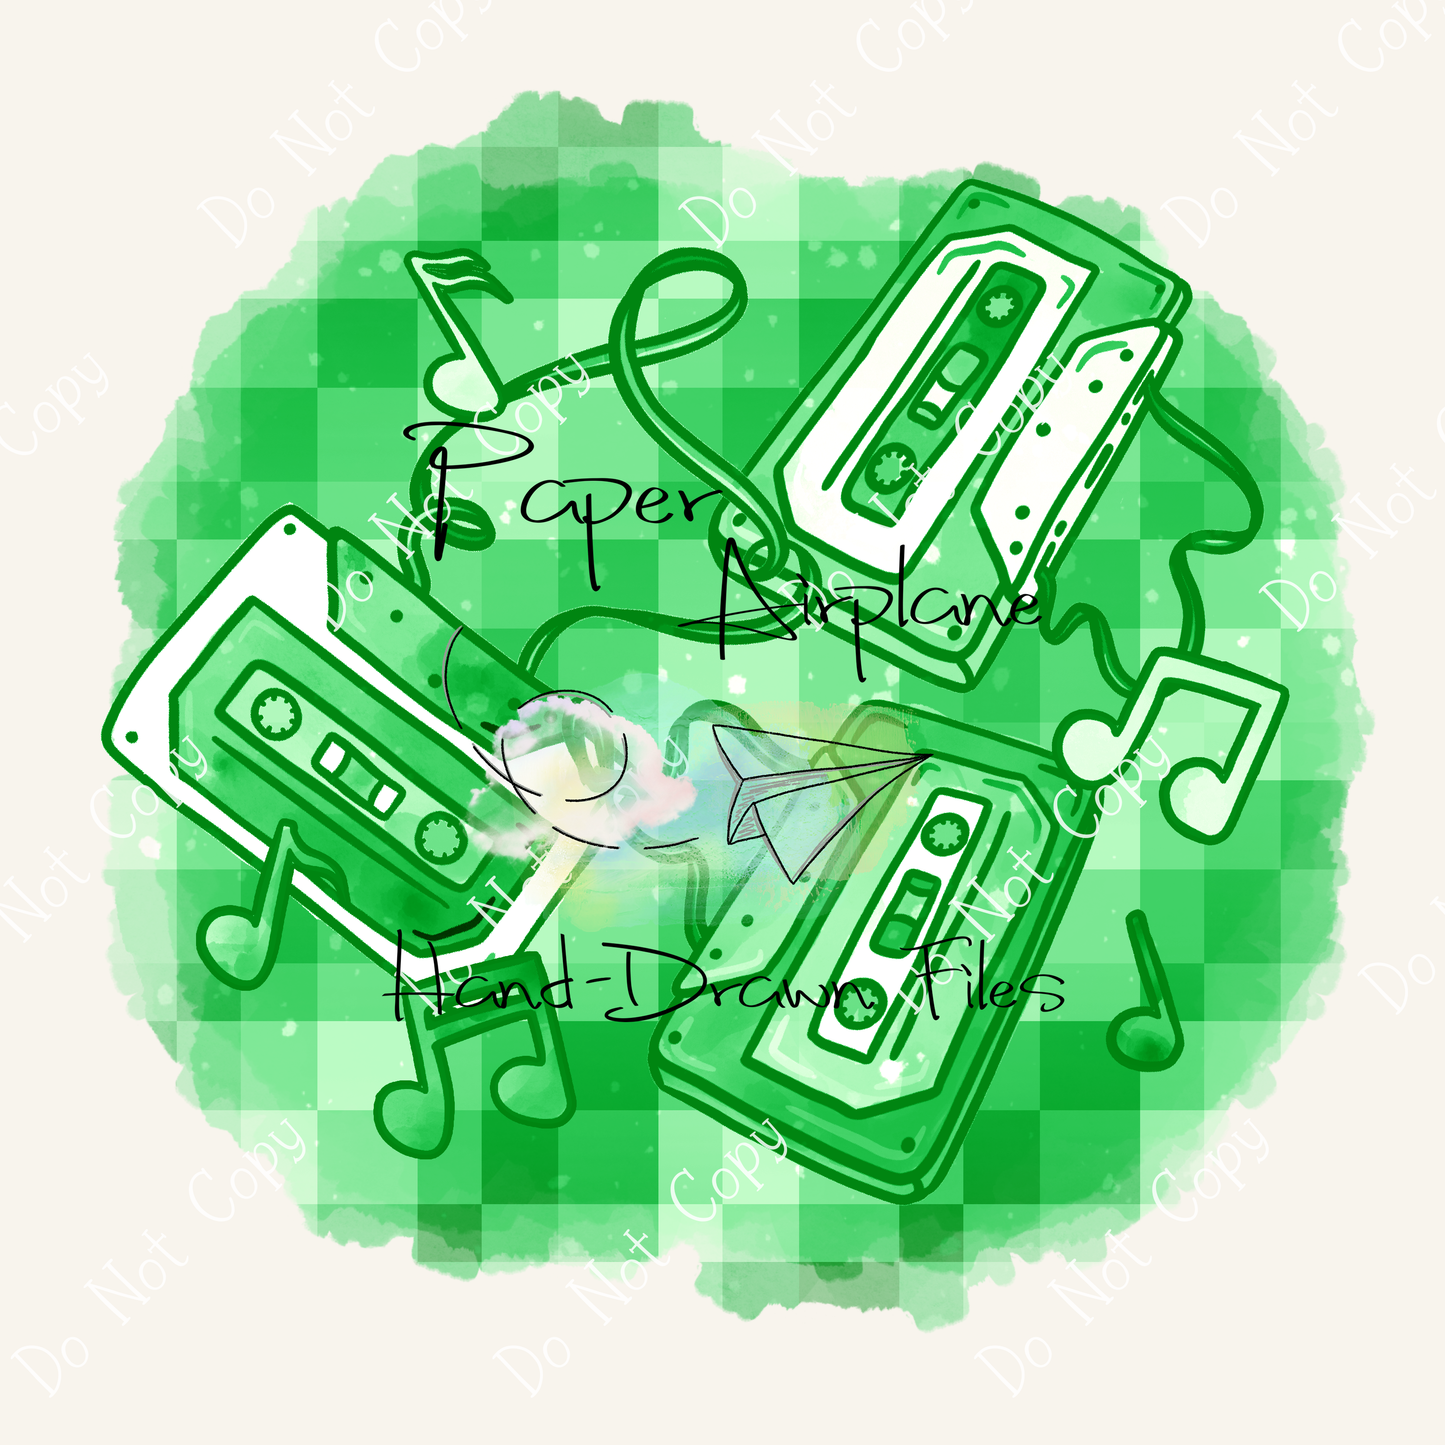 Mixtapes (Green)